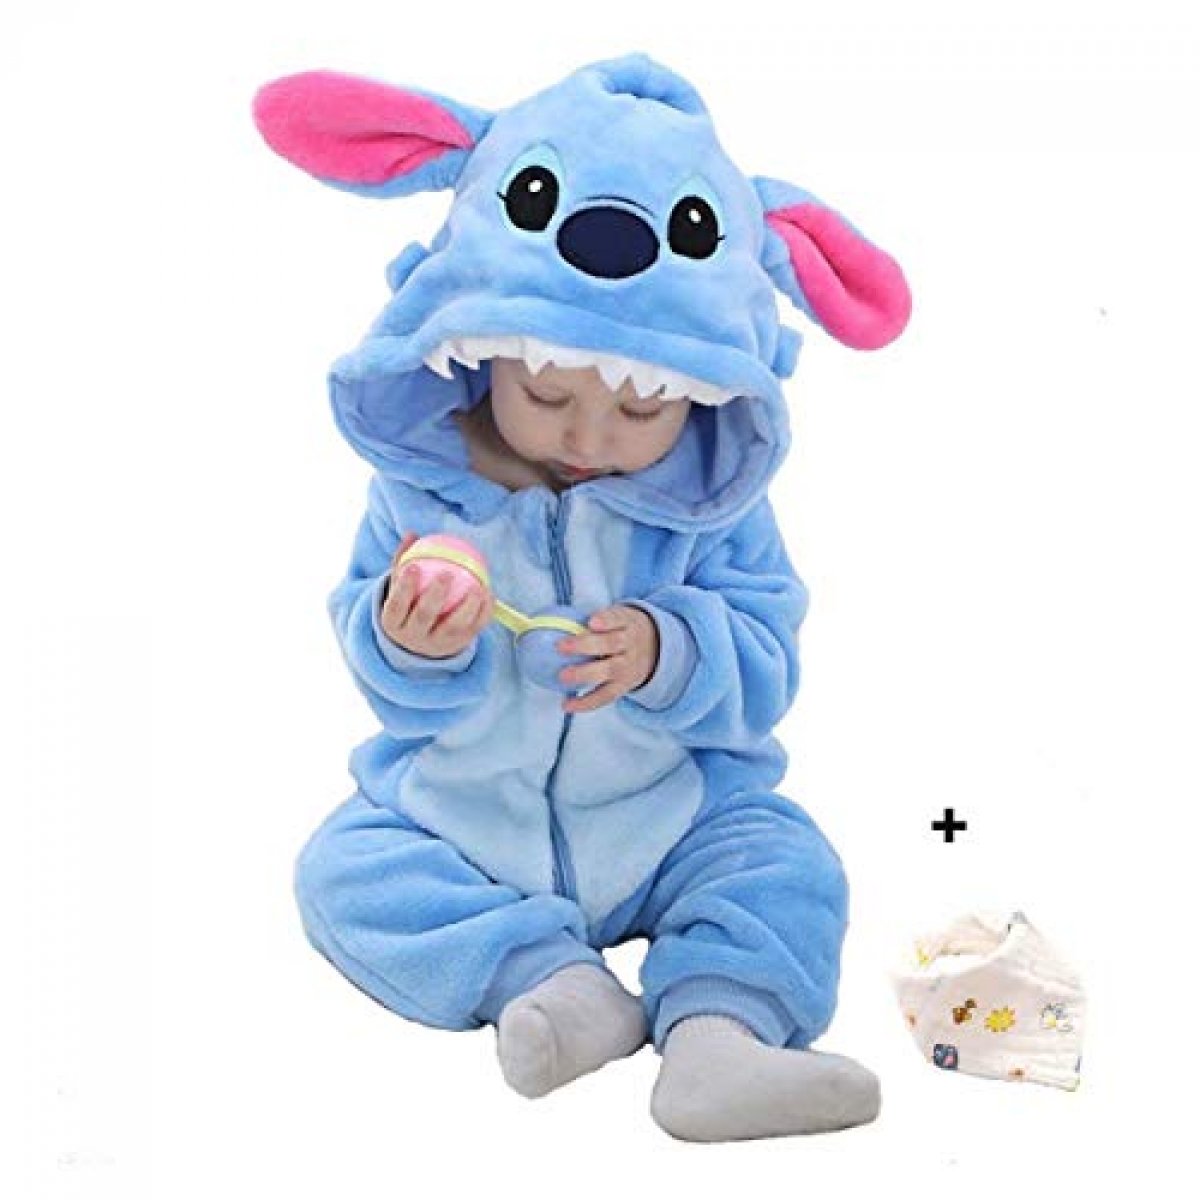 Pijama de Stitch bebé 🥰🫶🏻💙 1 disponible Talla 18 a 24 meses 65$